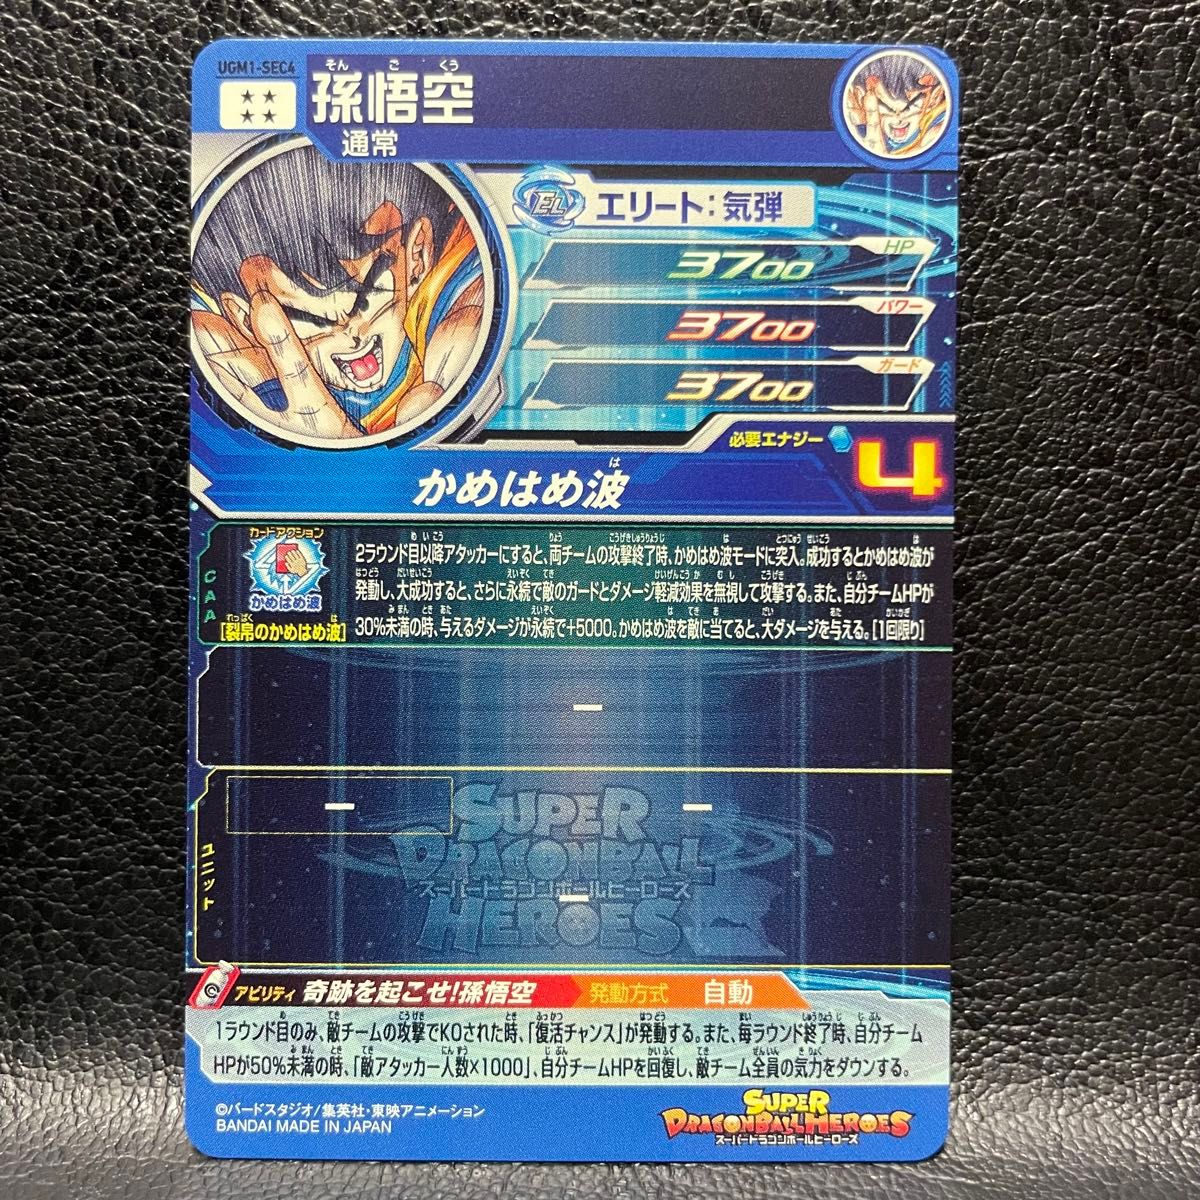 孫悟空 シリアル No. 1471 UGM1-SEC4 ドラゴンボールヒーローズ